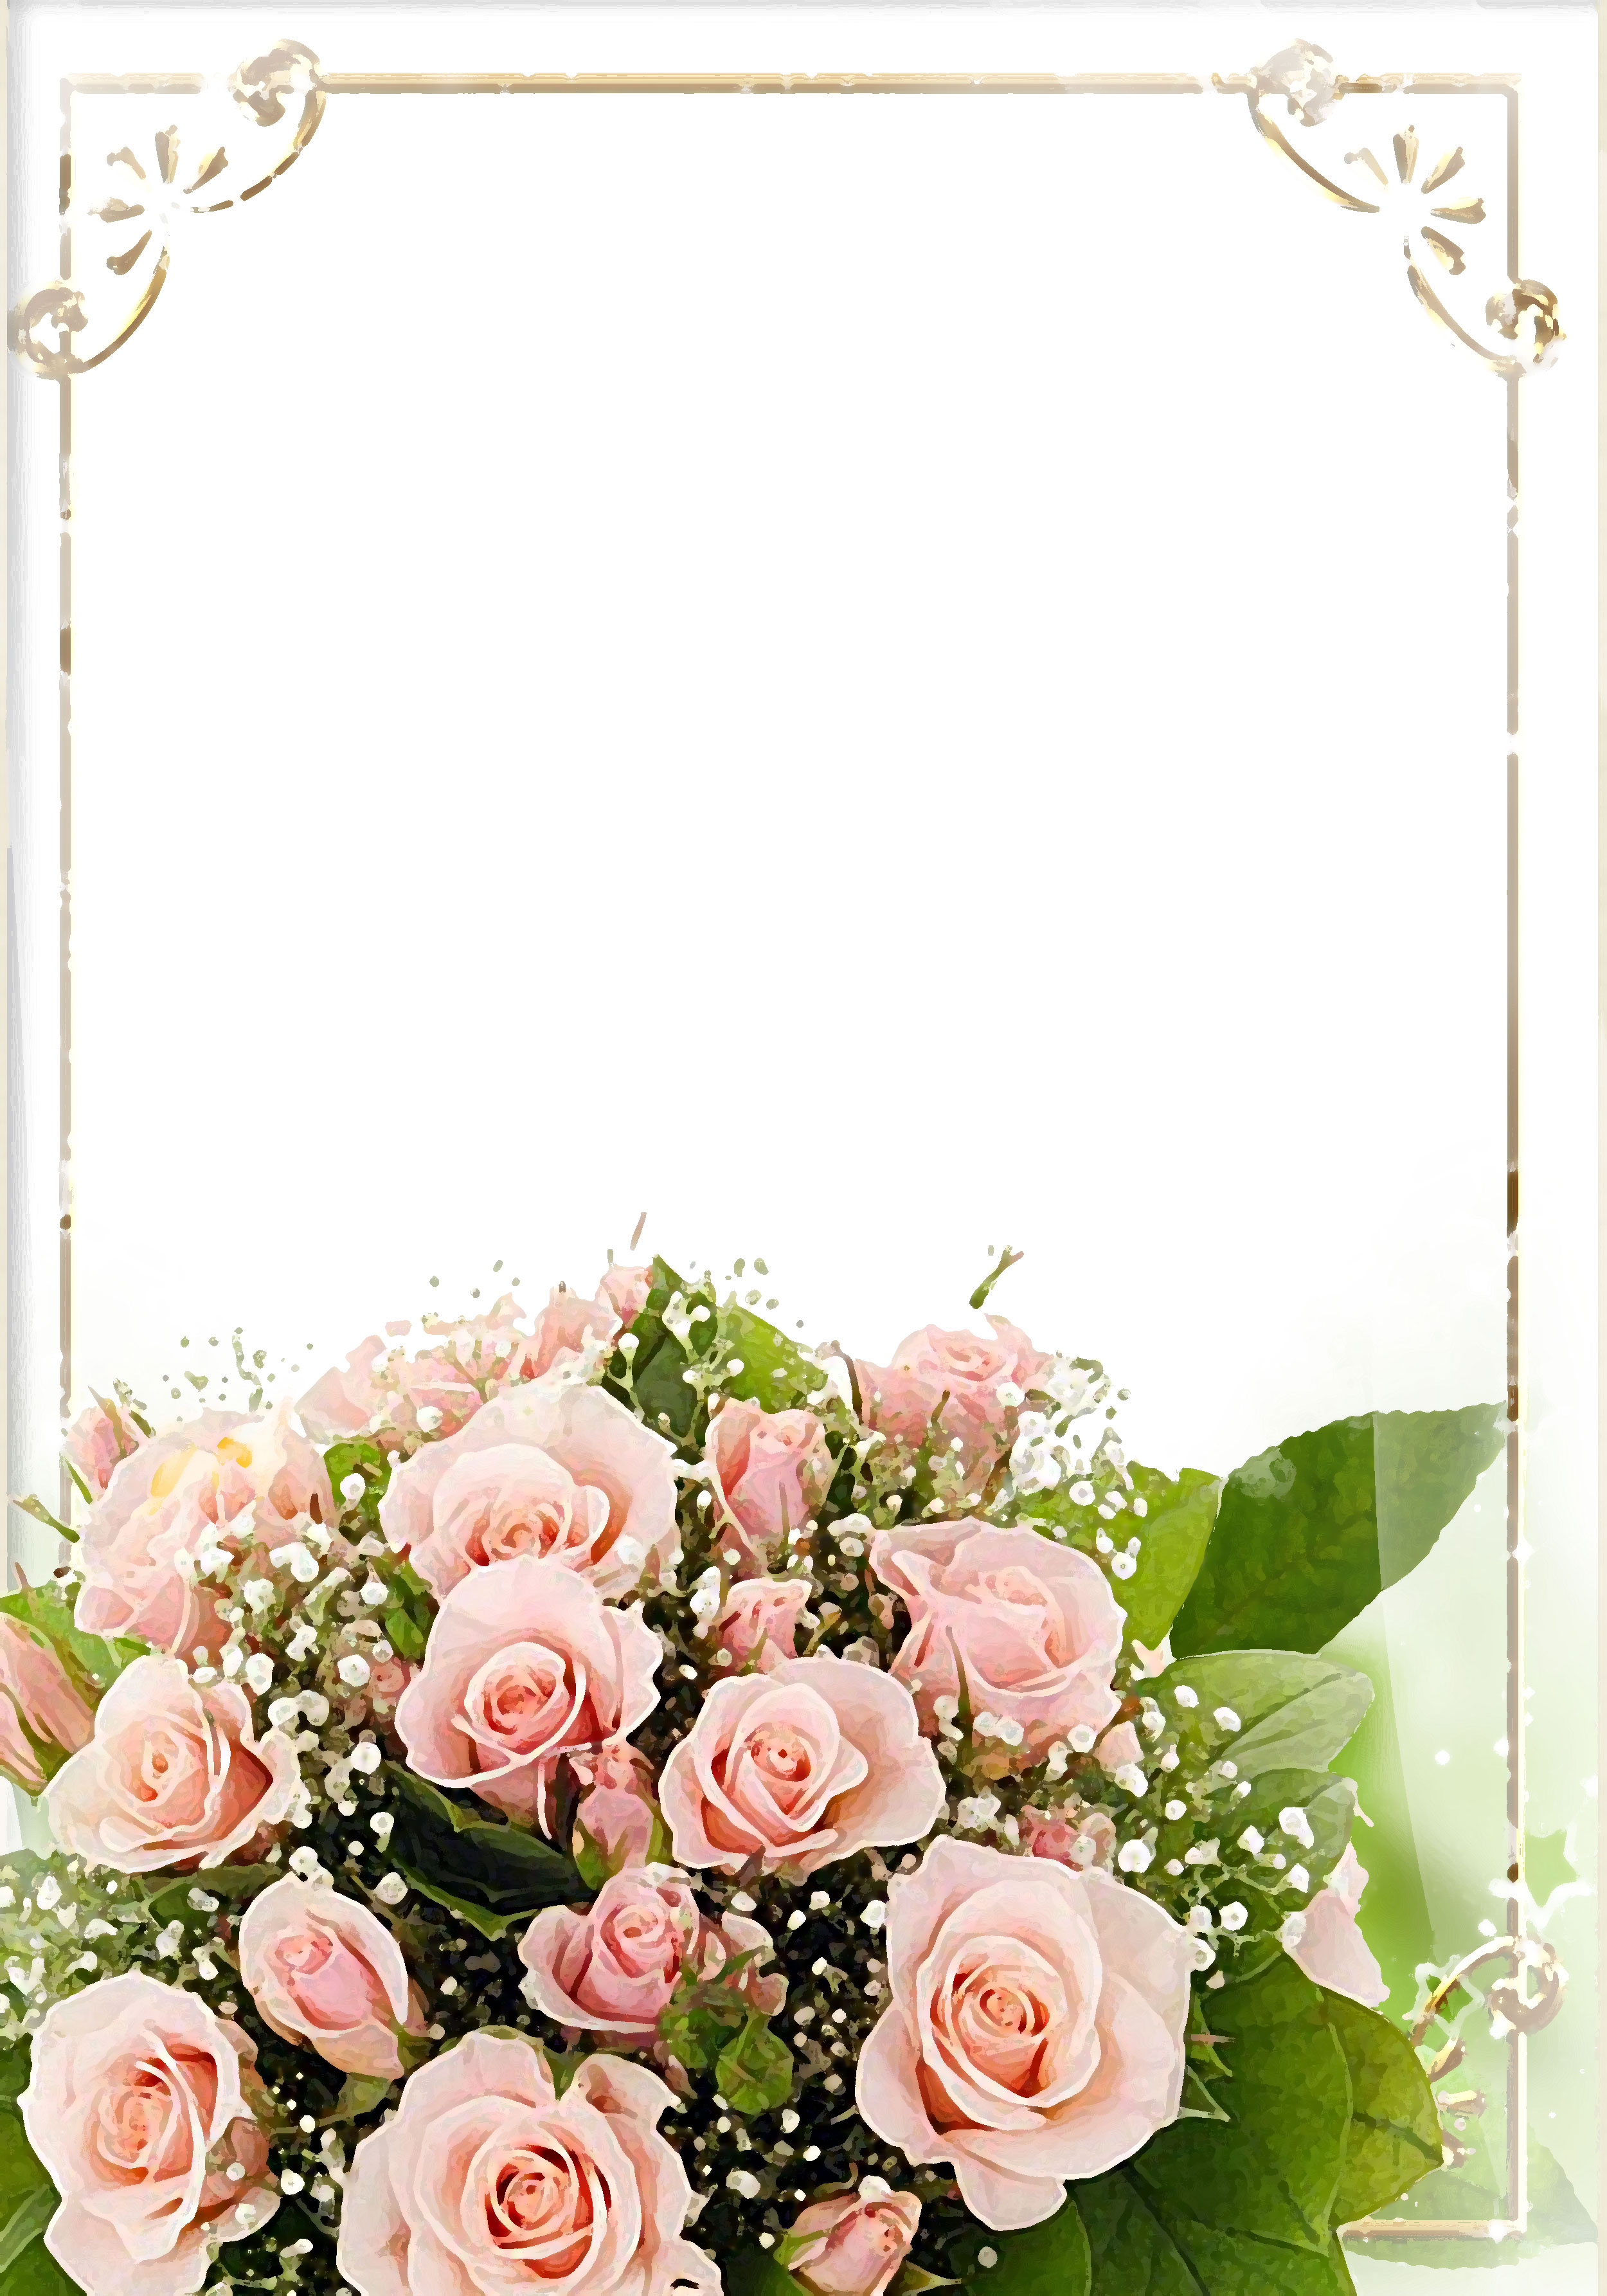 壁紙 背景イラスト 花のフレーム 外枠 No 034 ピンクのバラ束 リアル